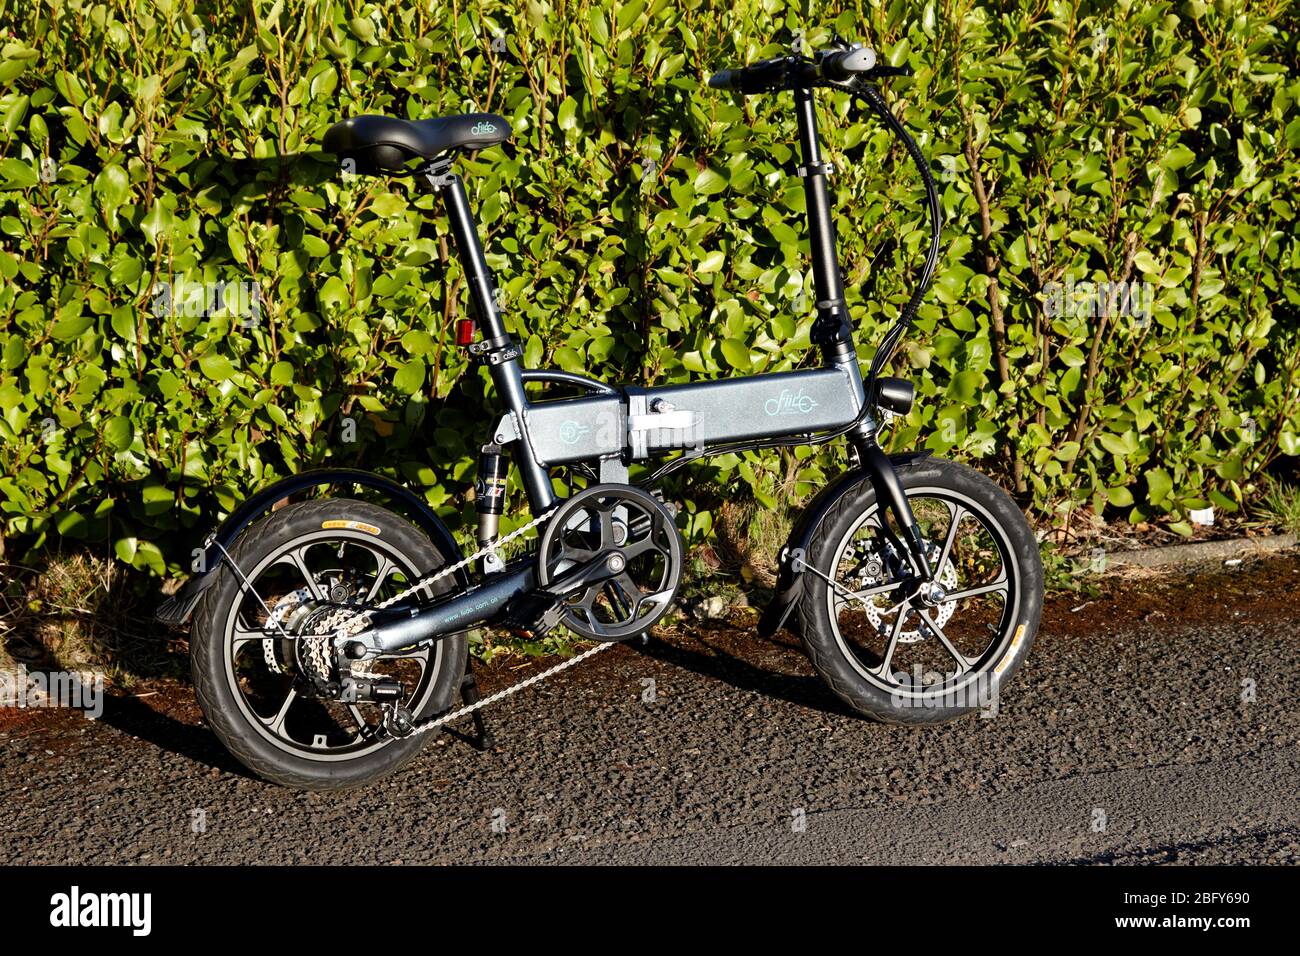 fiido d2s pliable électrique vélo route légale au royaume-uni Banque D'Images